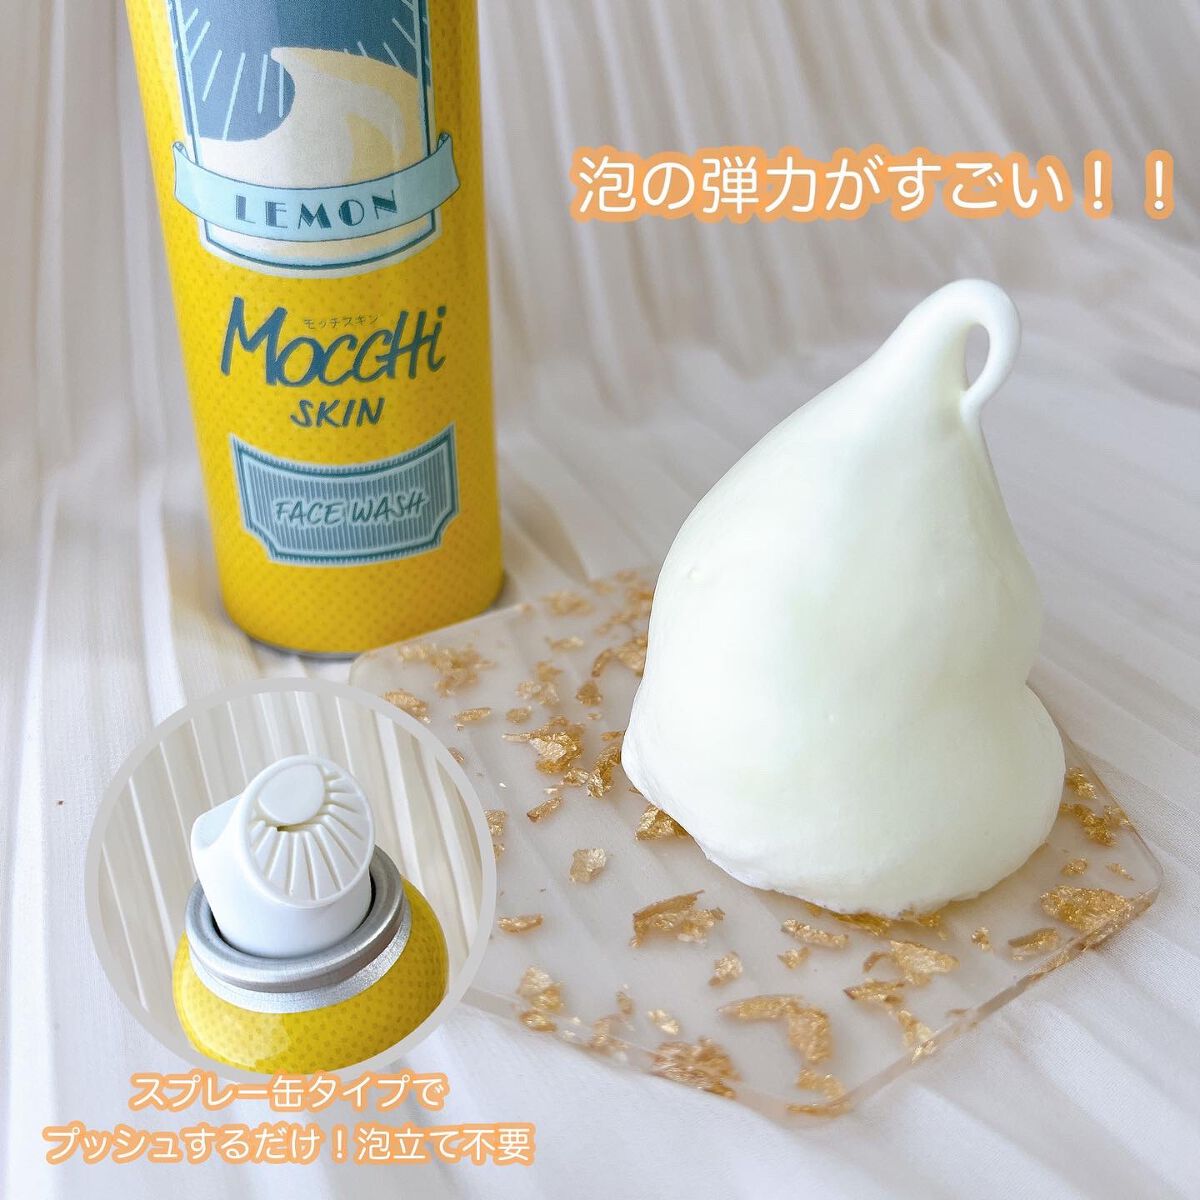 モッチスキン吸着泡洗顔FL(レモン)/MoccHi SKIN/泡洗顔の動画クチコミ1つ目